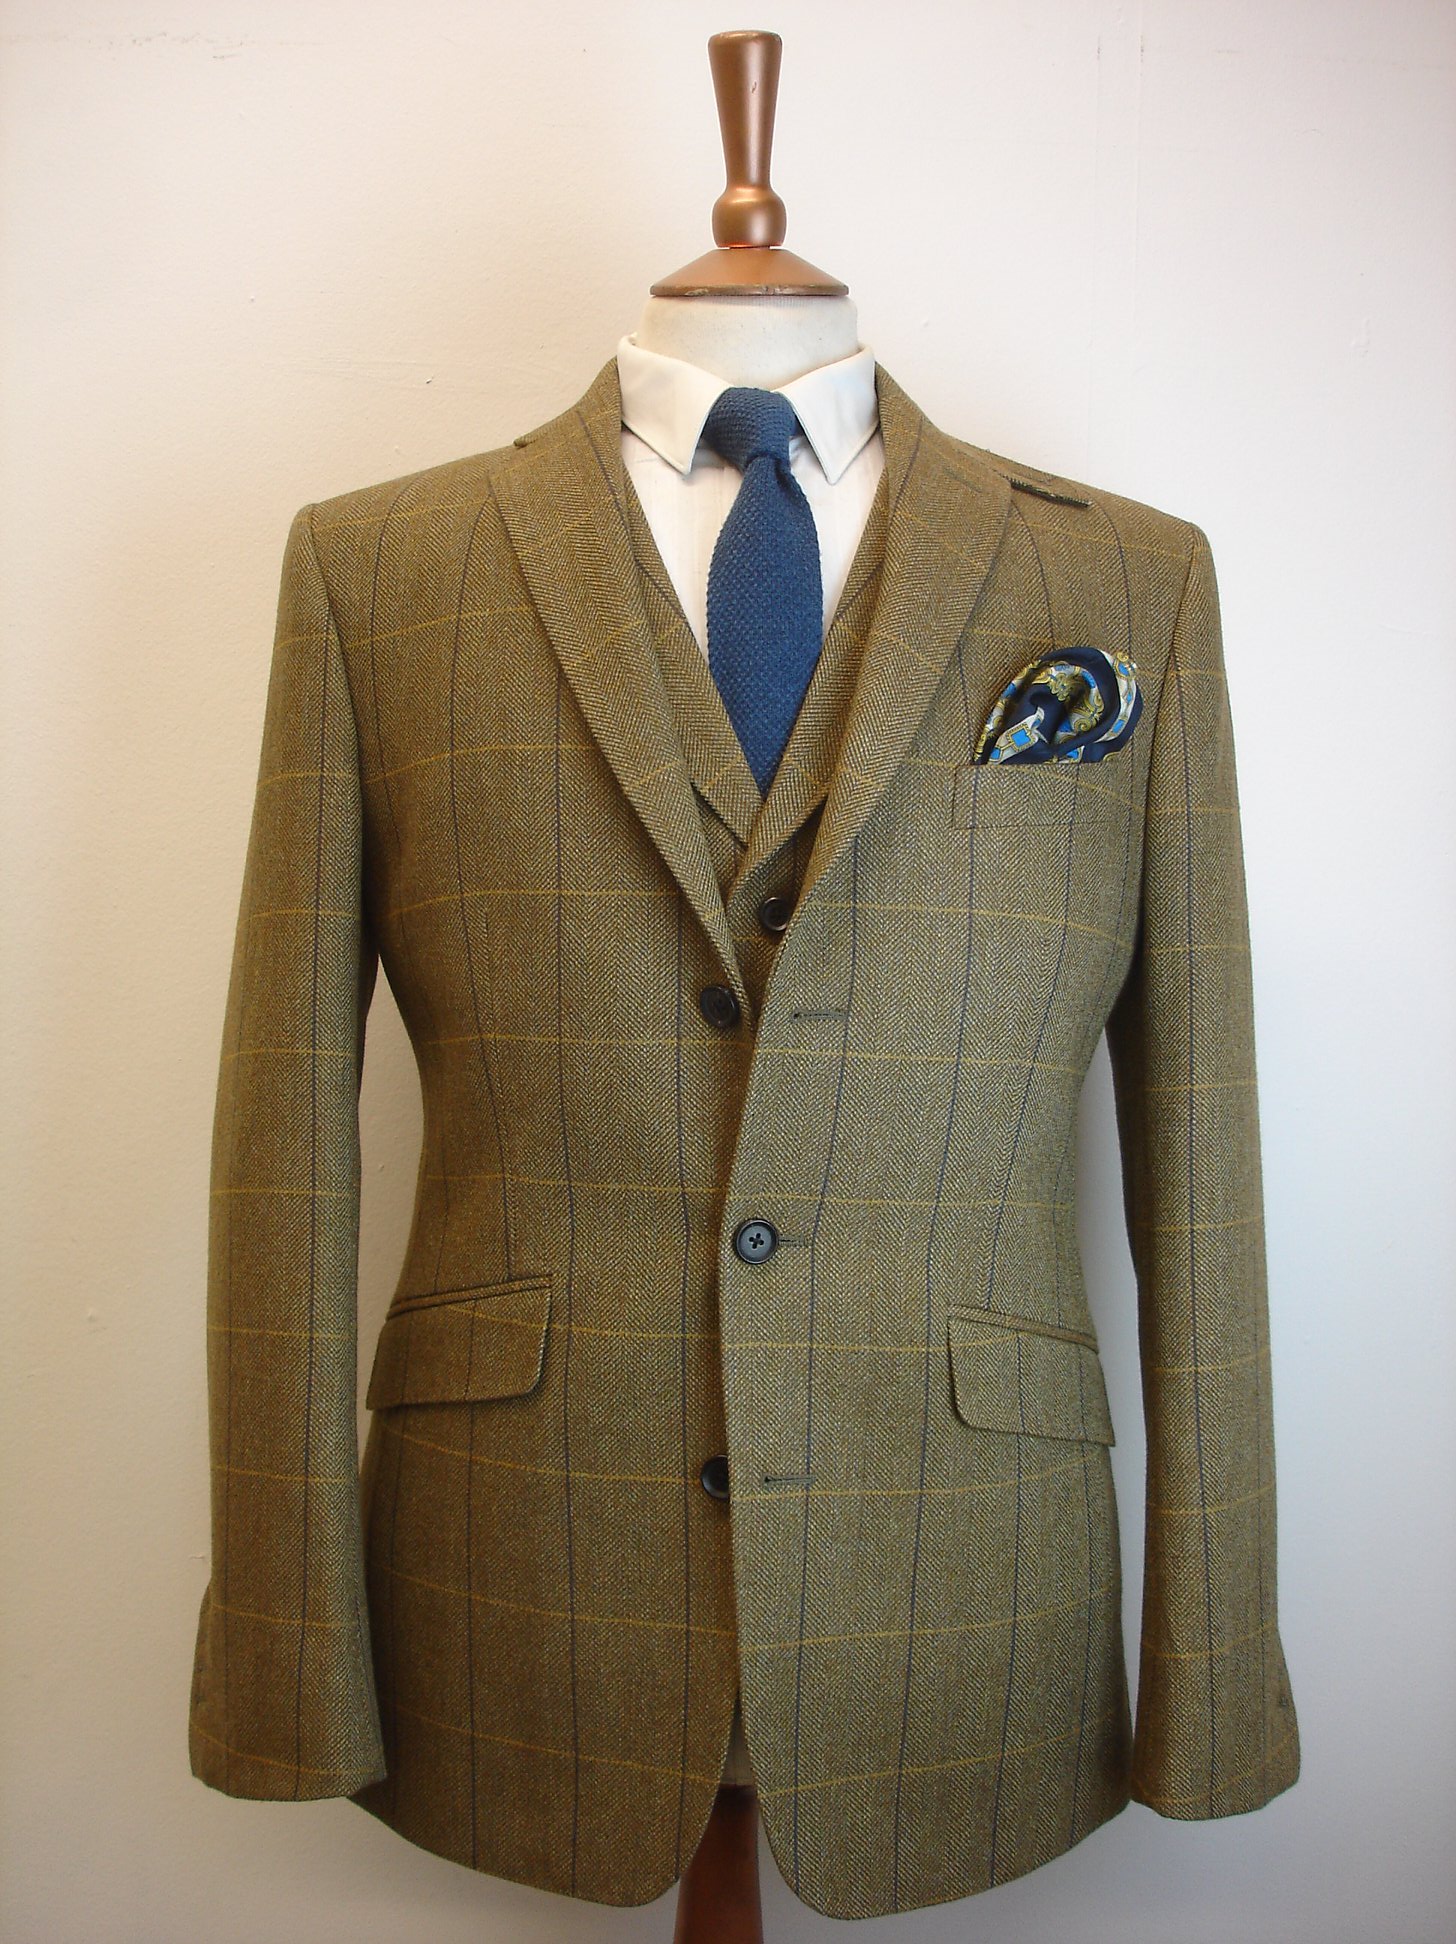 4 Piece Tweed Suit in Porter & Harding Hartwist — TWEED ADDICT